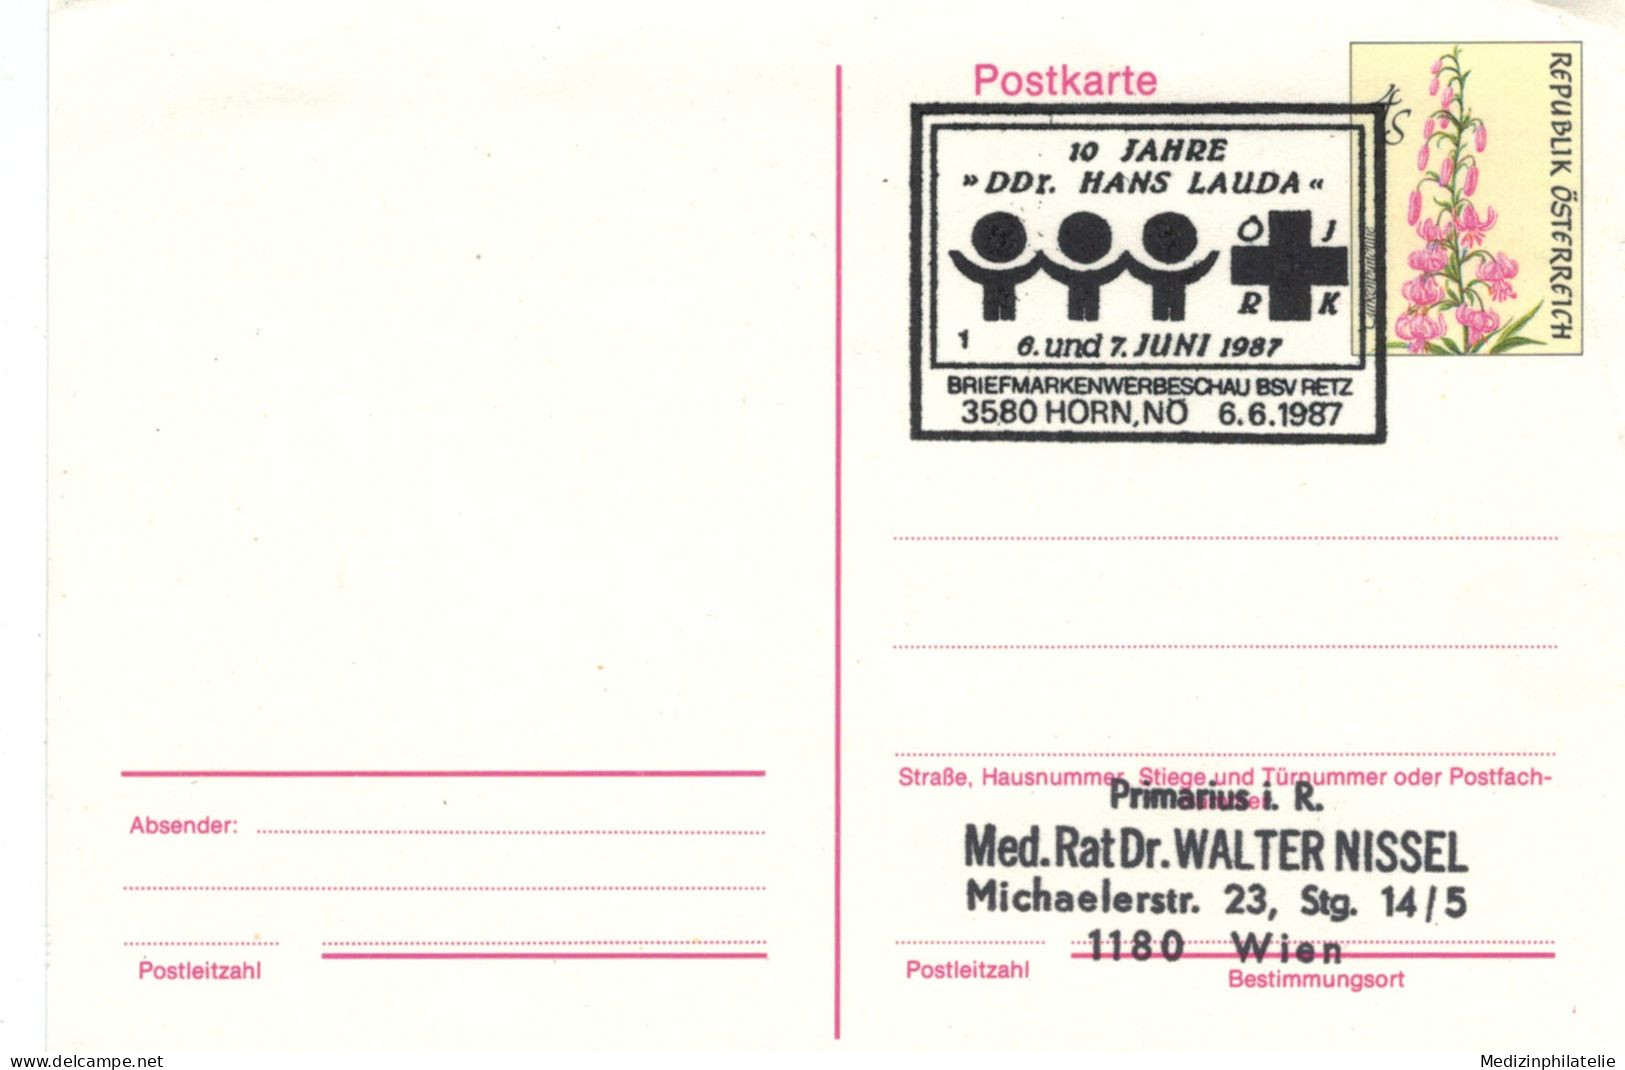 Rotes Kreuz - 3580 Horn 1987 Türkenbund-Lilie - First Aid